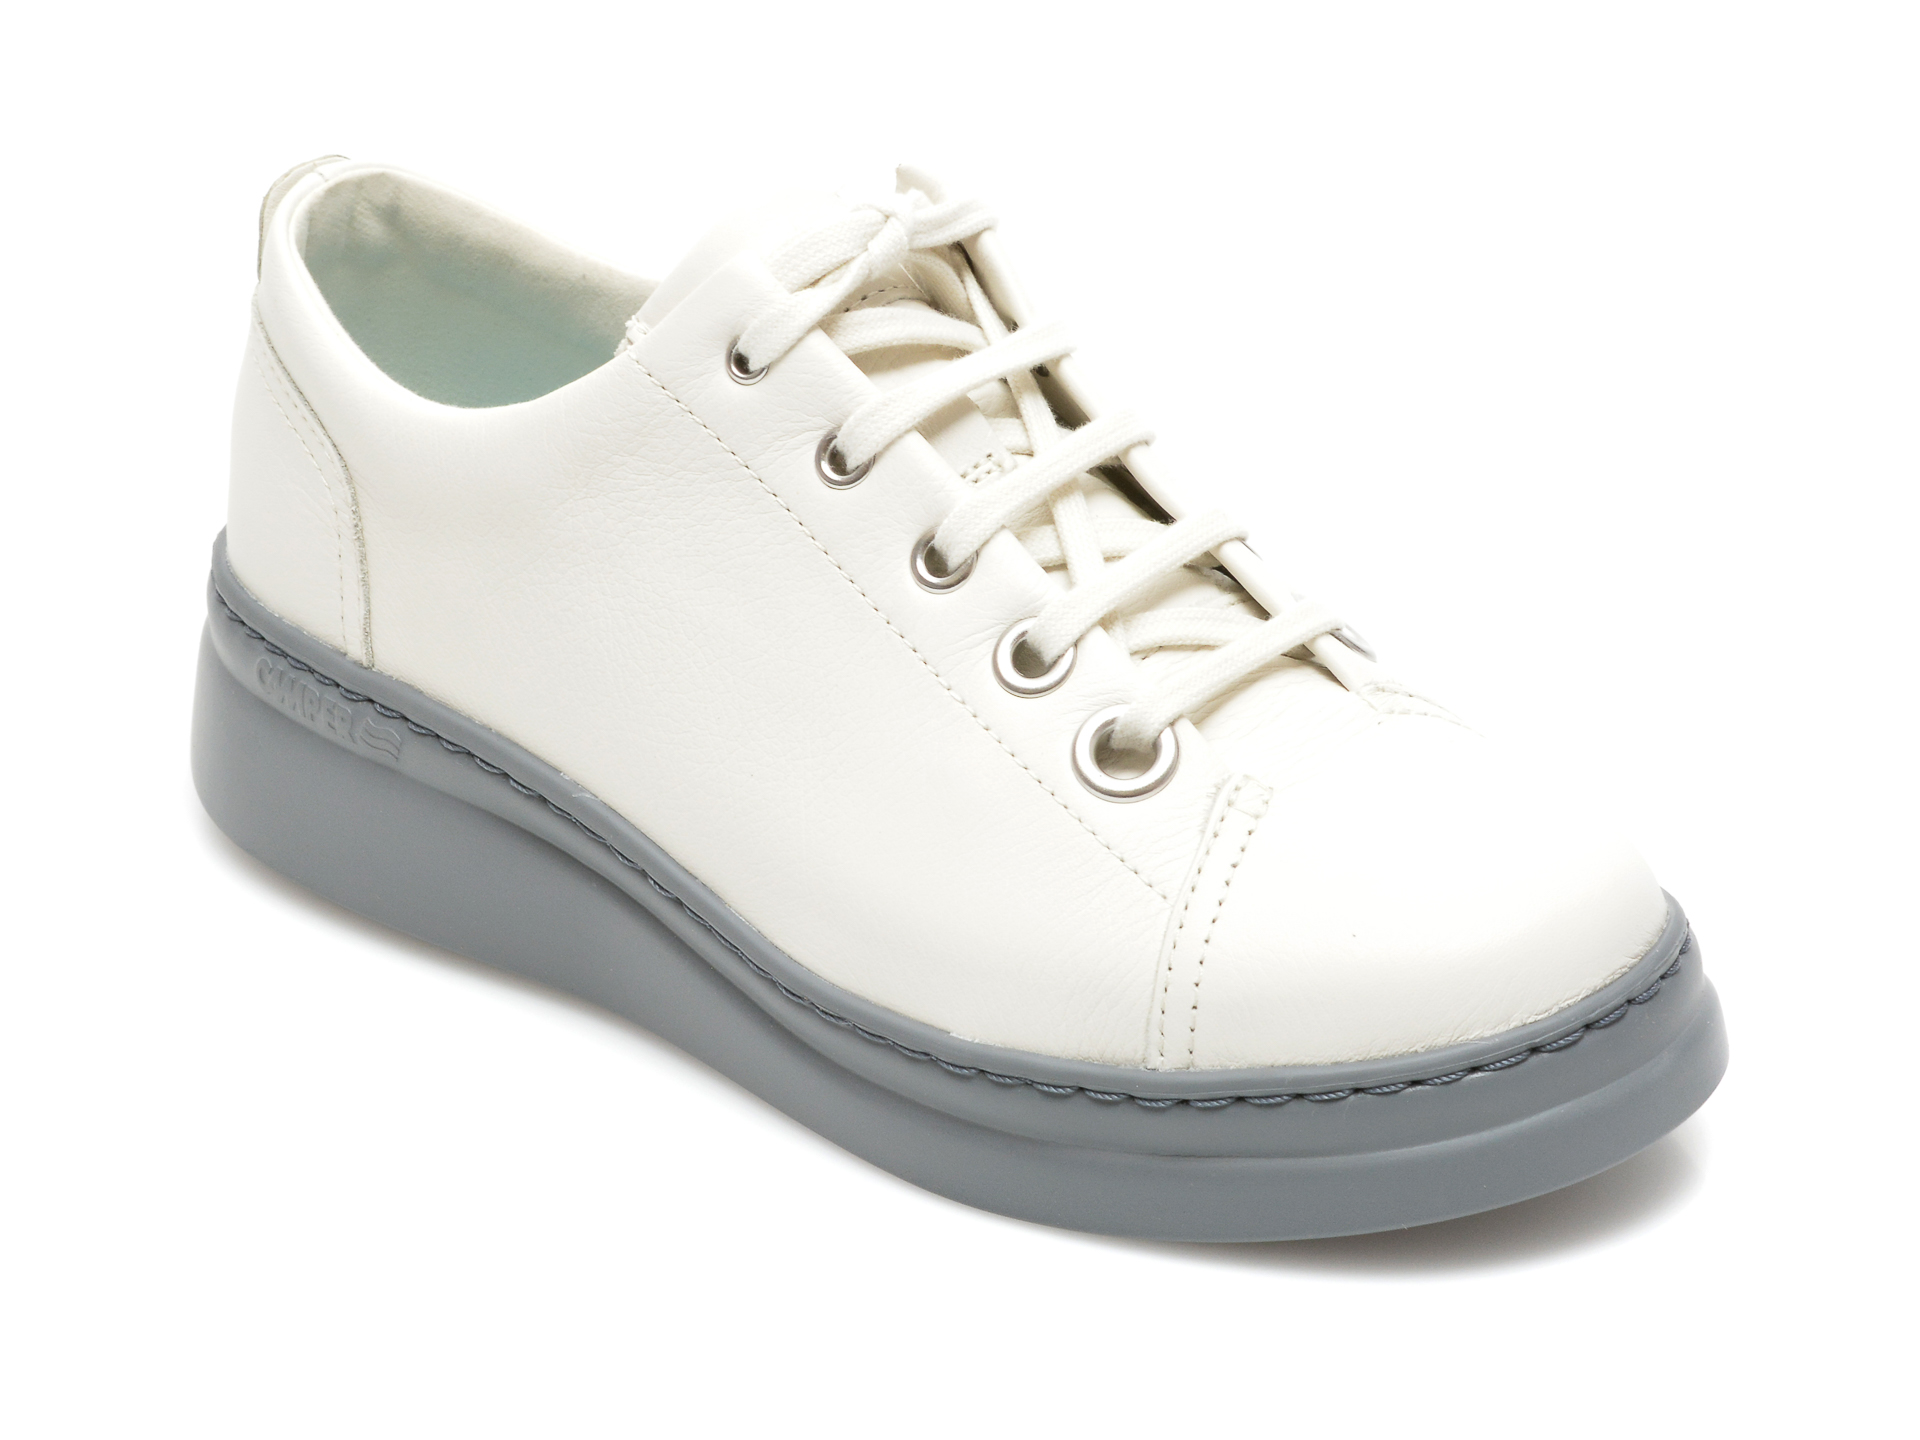 Pantofi CAMPER albi, K201279, din piele naturala Camper